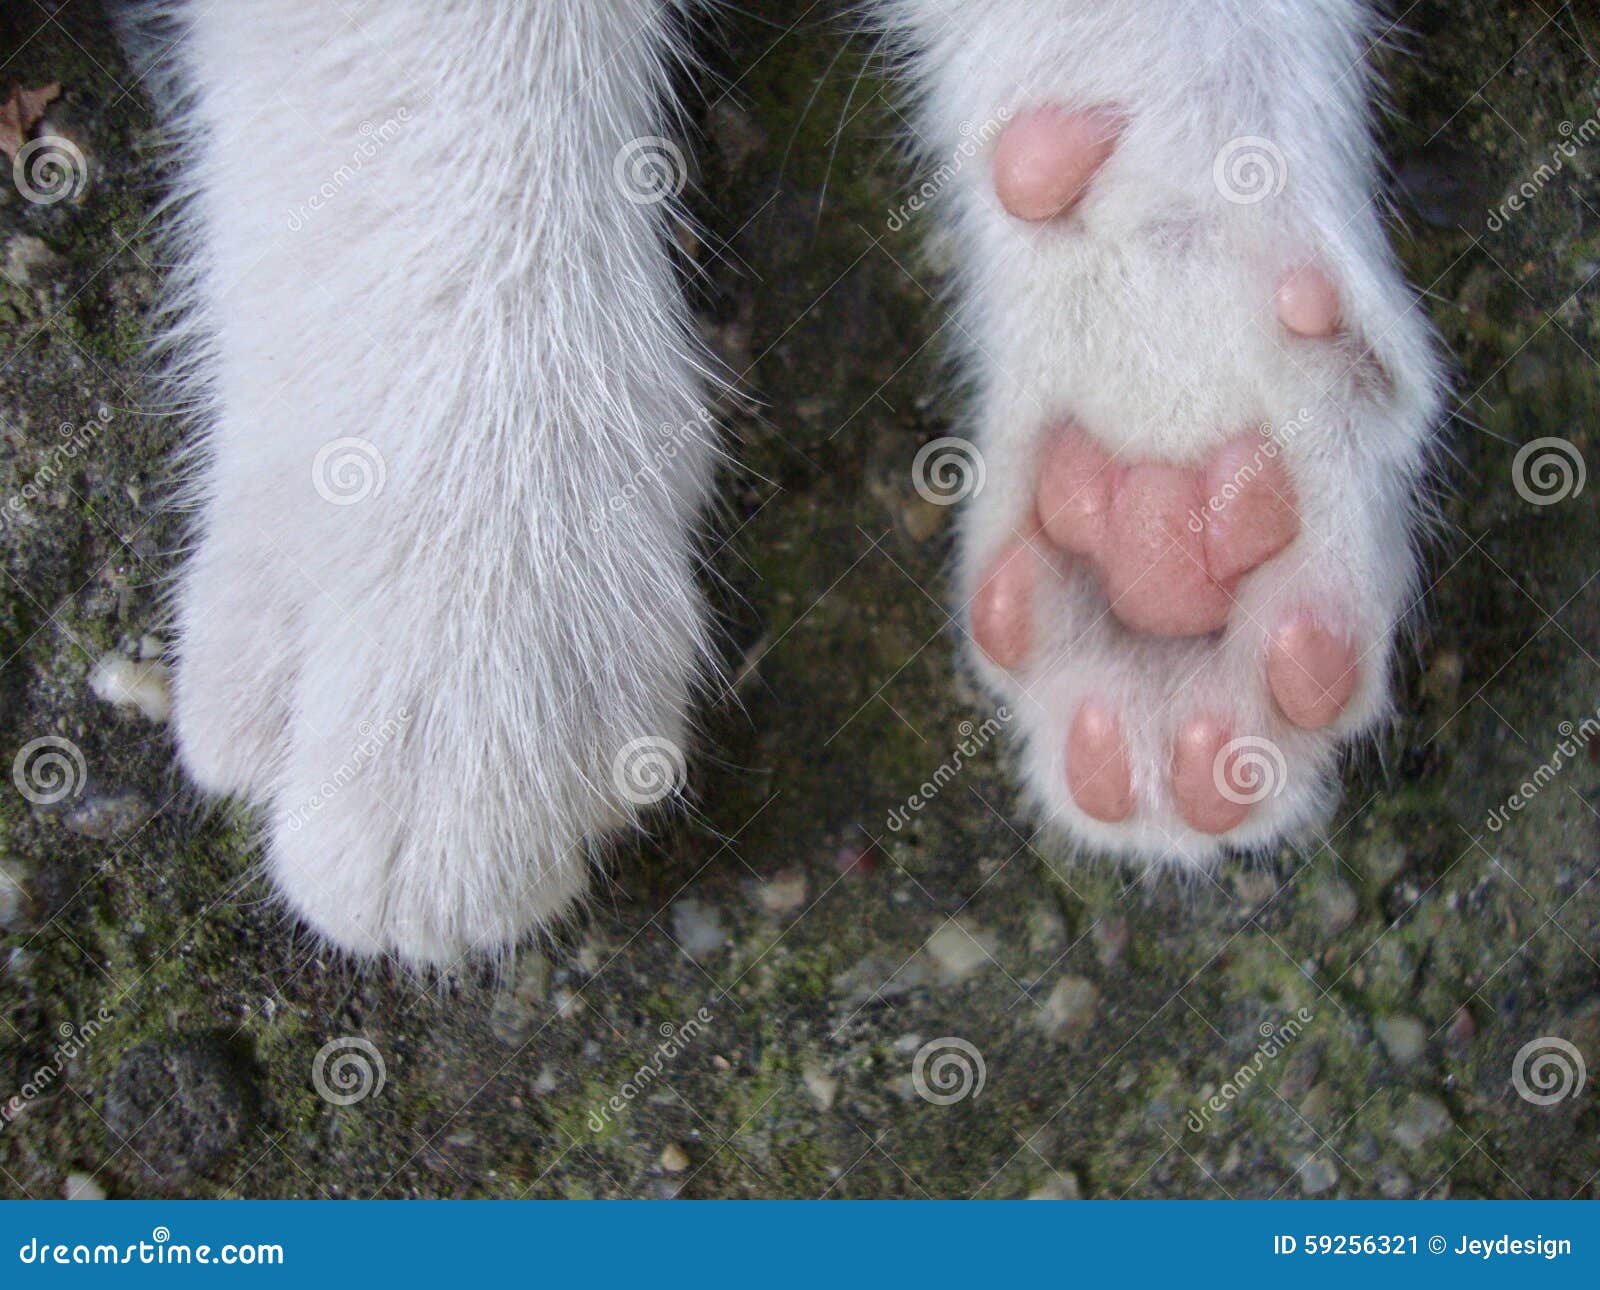 Лапки белые у лесного. Лапка кота. Белые кошачьи лапки. Кот с белыми лапками. Белая лапа кота.